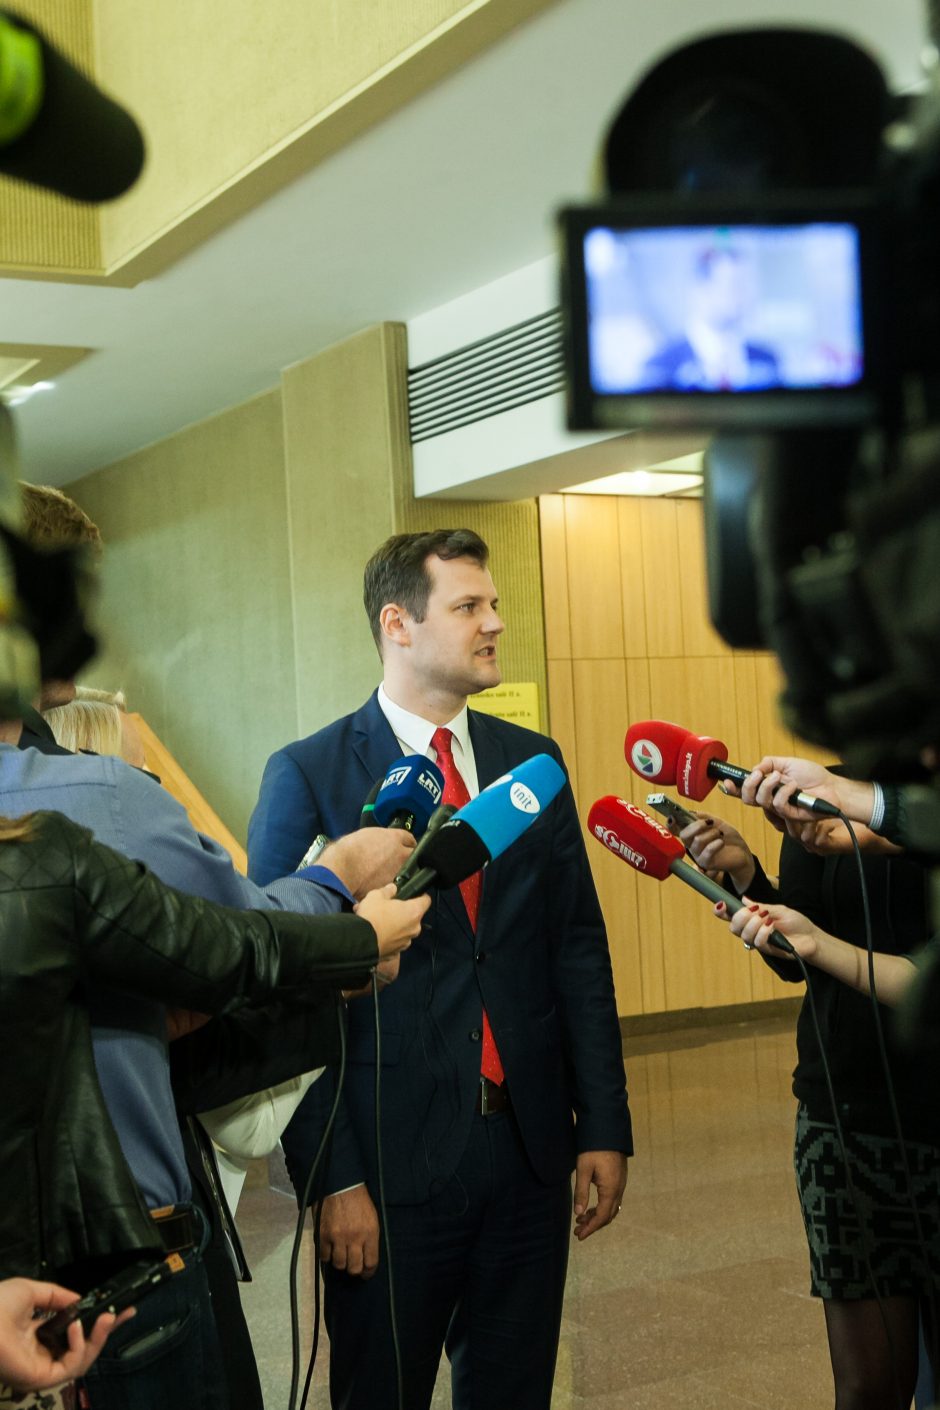 Seimo socialdemokratai sudarys koaliciją su „valstiečių“ frakcija